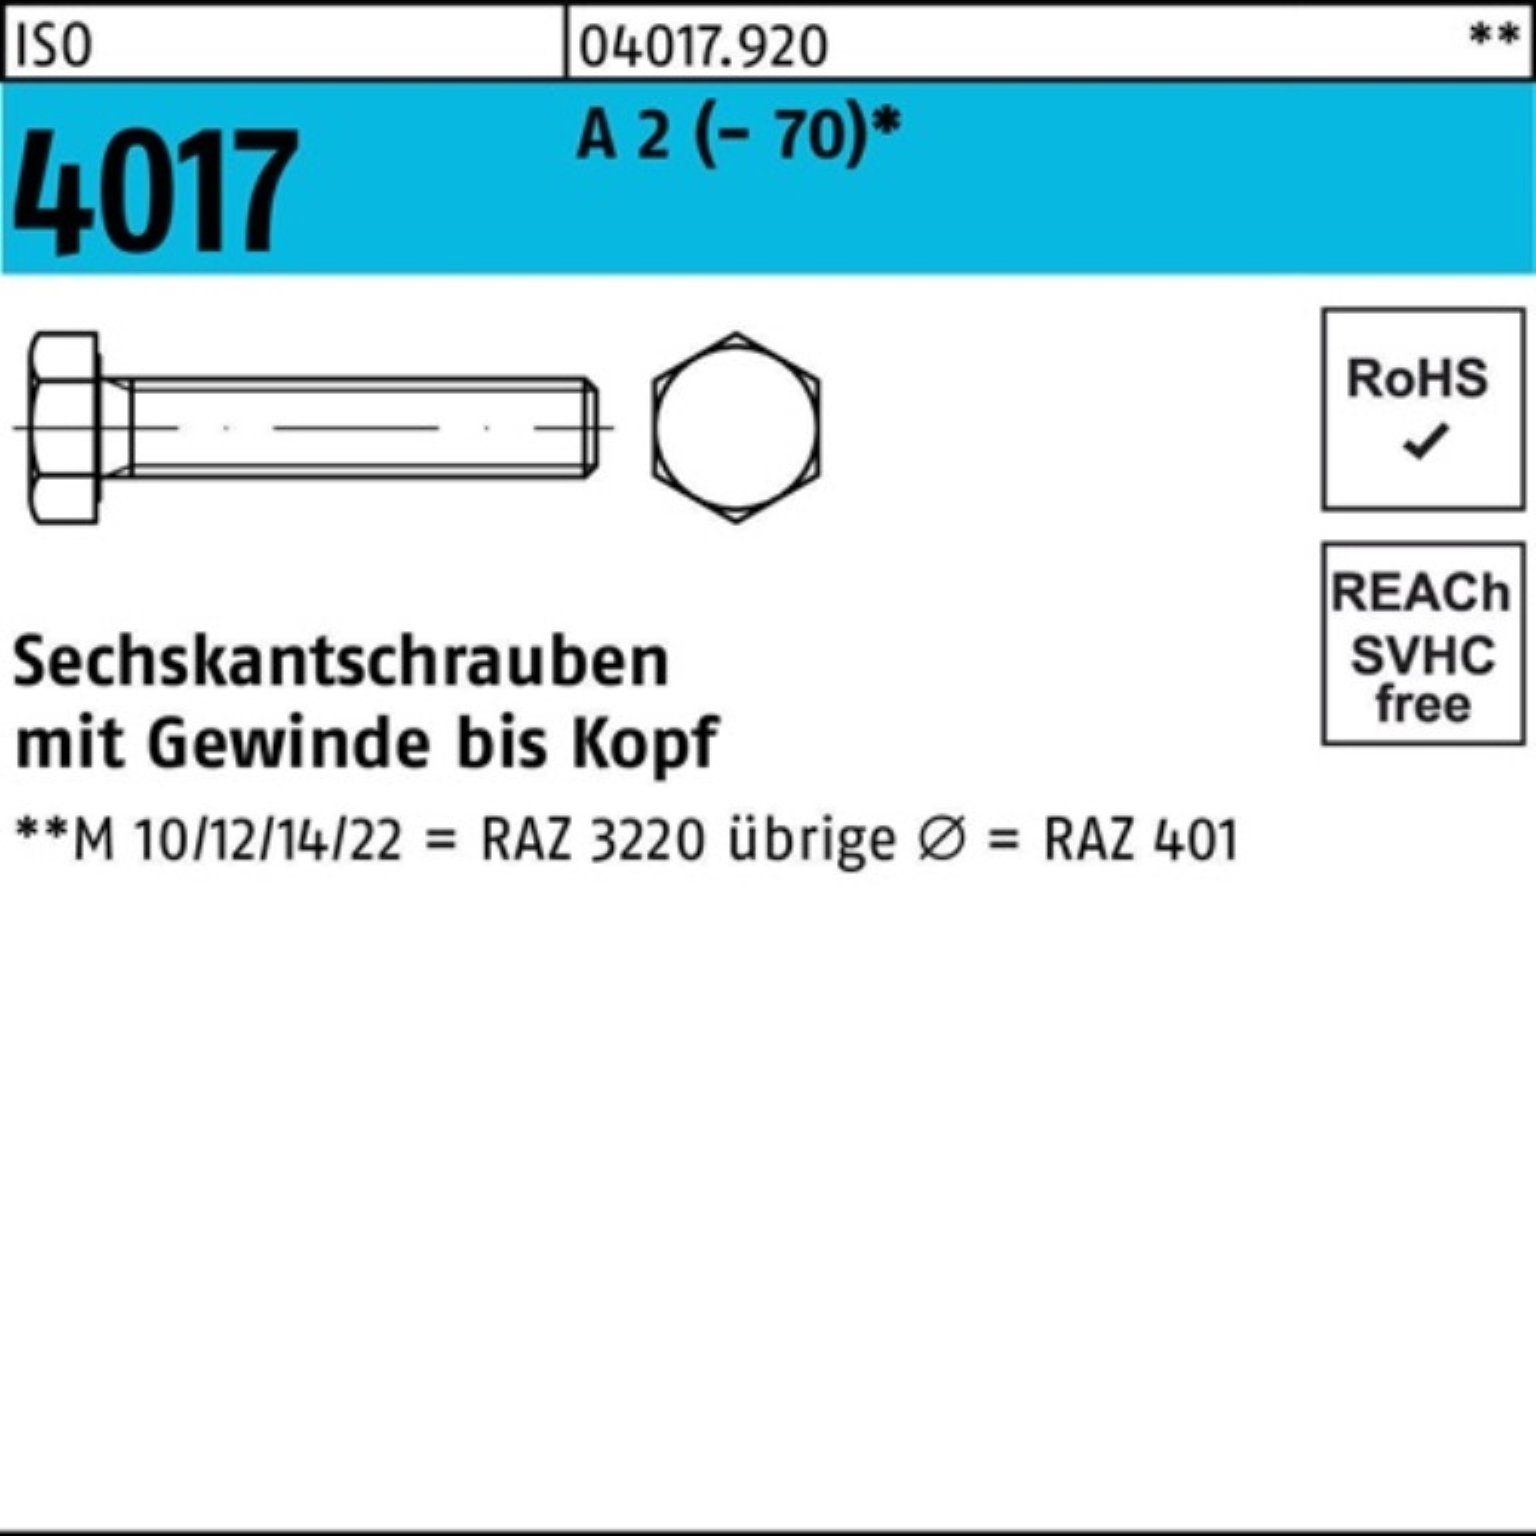 Sechskantschraube VG Sechskantschraube 4017 100er 2 M12x ISO Pack 35 Stück 100 A (70) Bufab